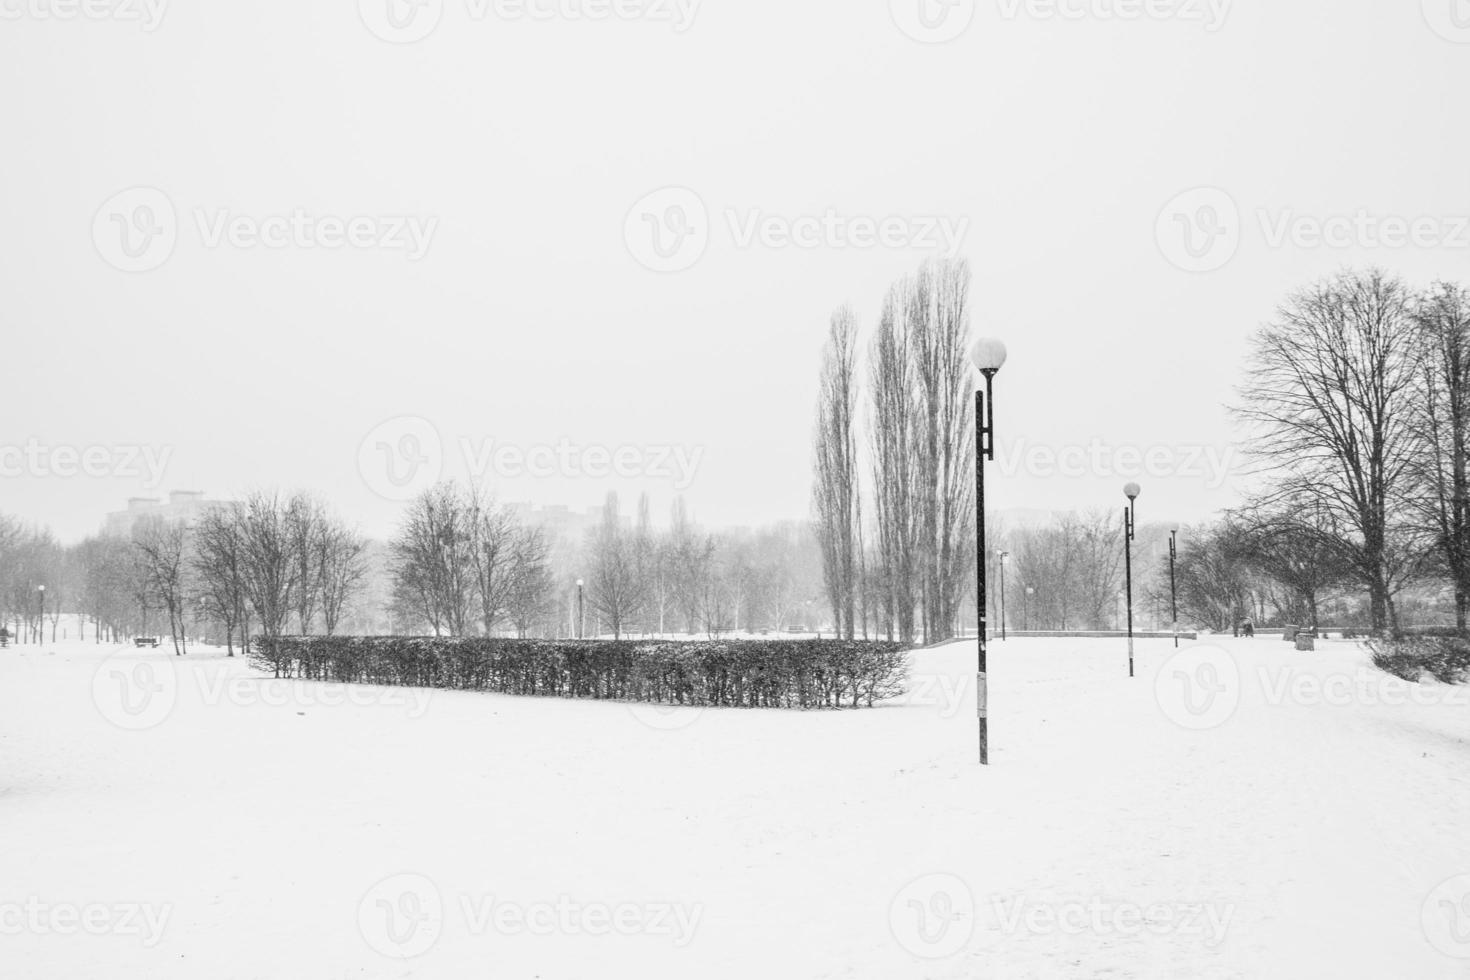 traurig Winter weiß schwarz Landschaft mit Bäume im das Schnee im Januar foto